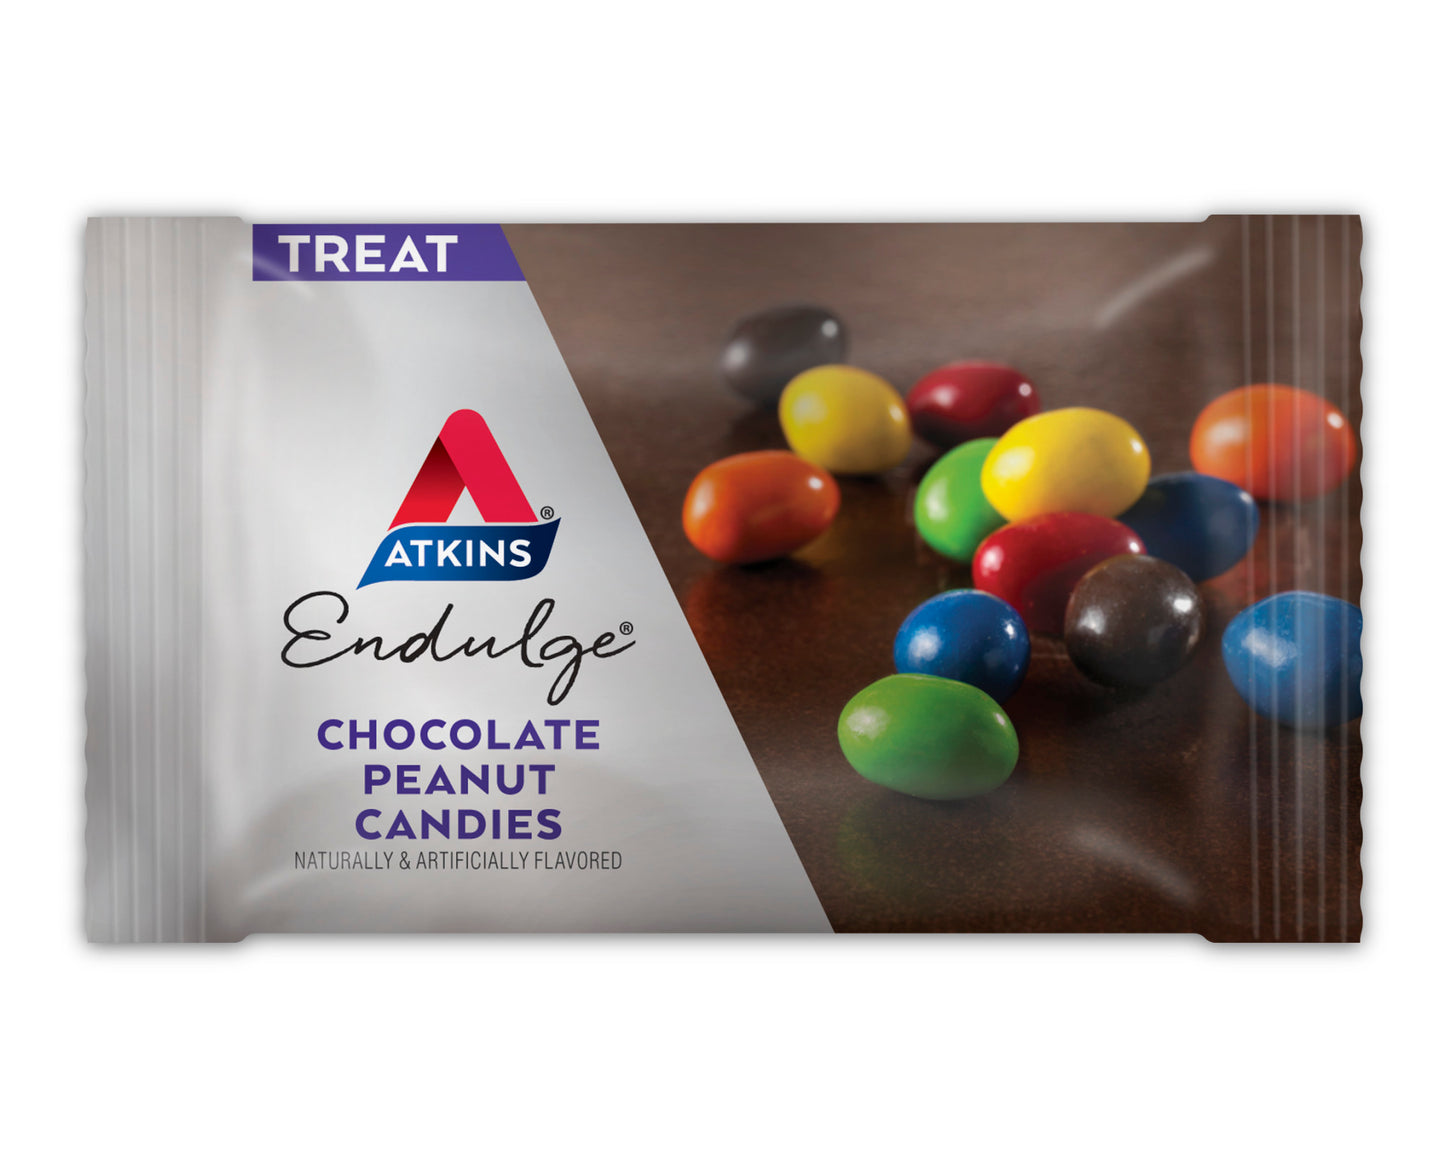 Atkins Chocolate peanut candies